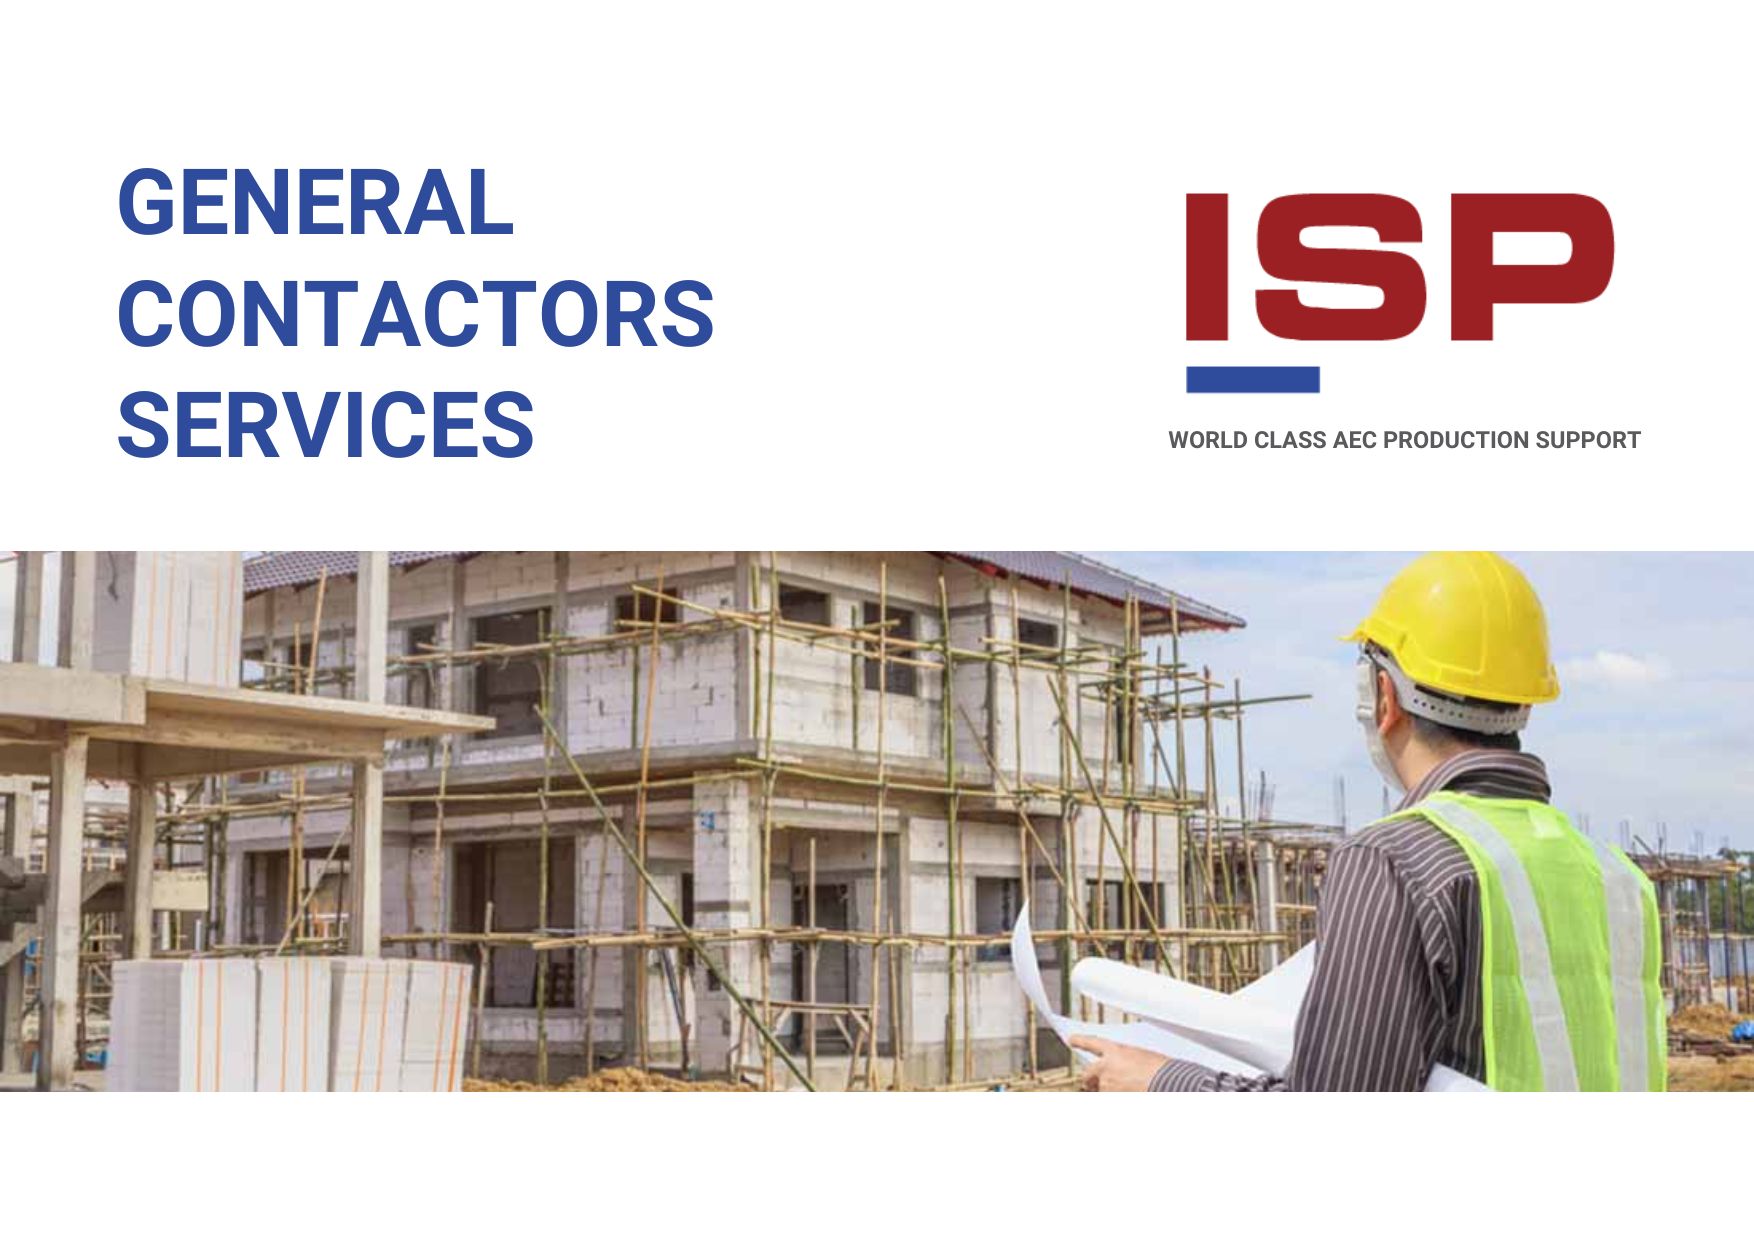 General Contactors Services